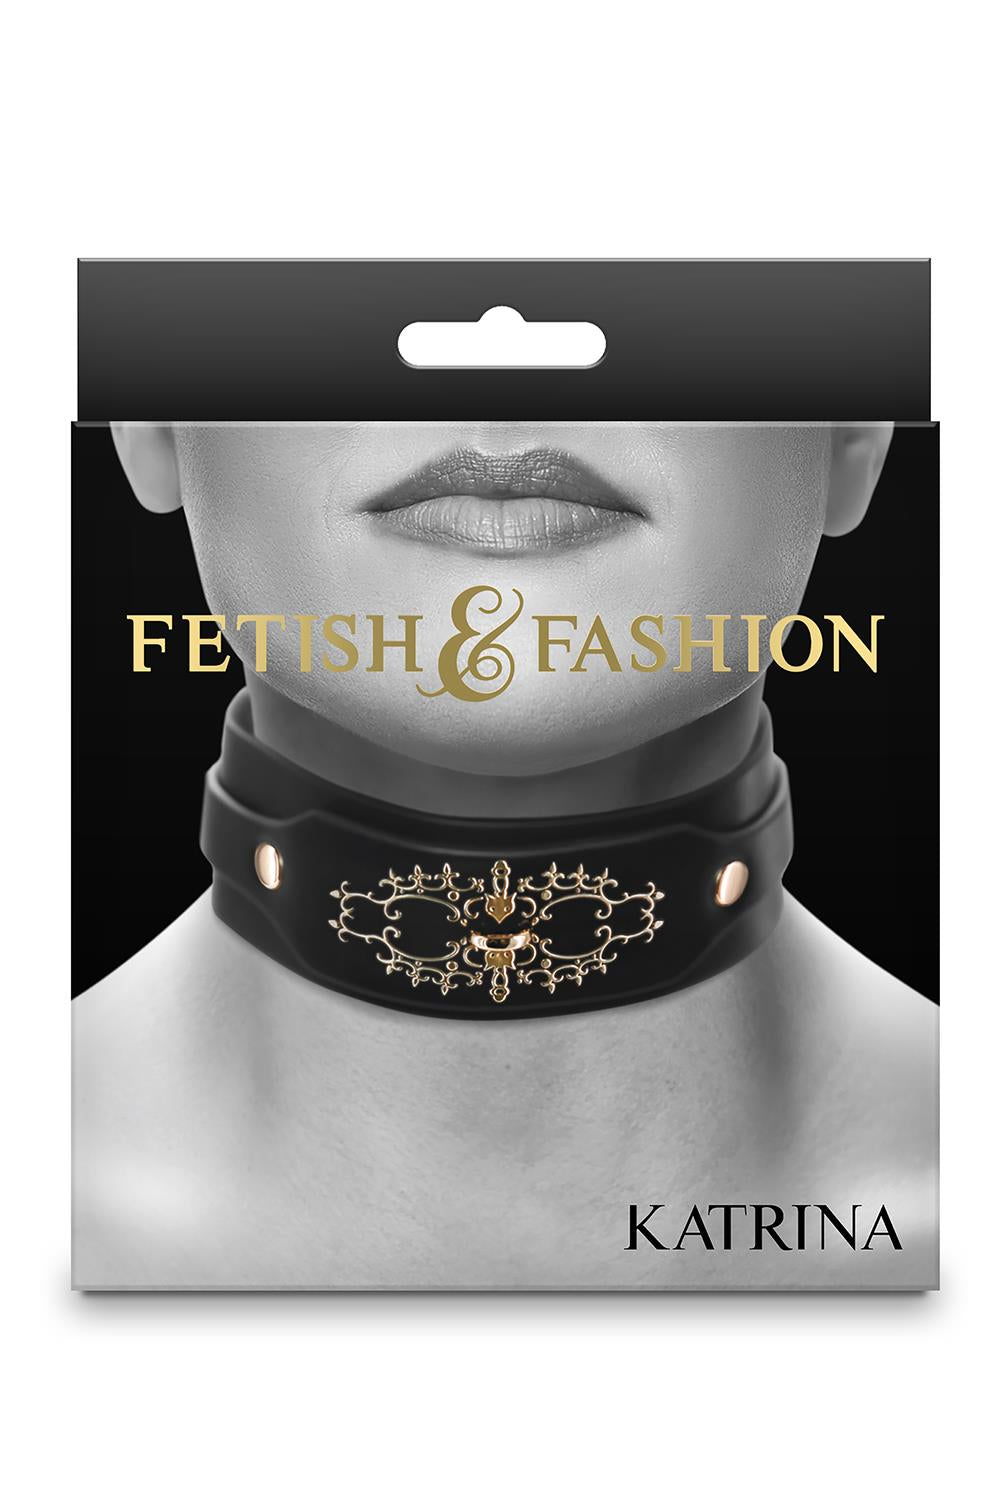 Fetish & Fashion - Katrina - Collar